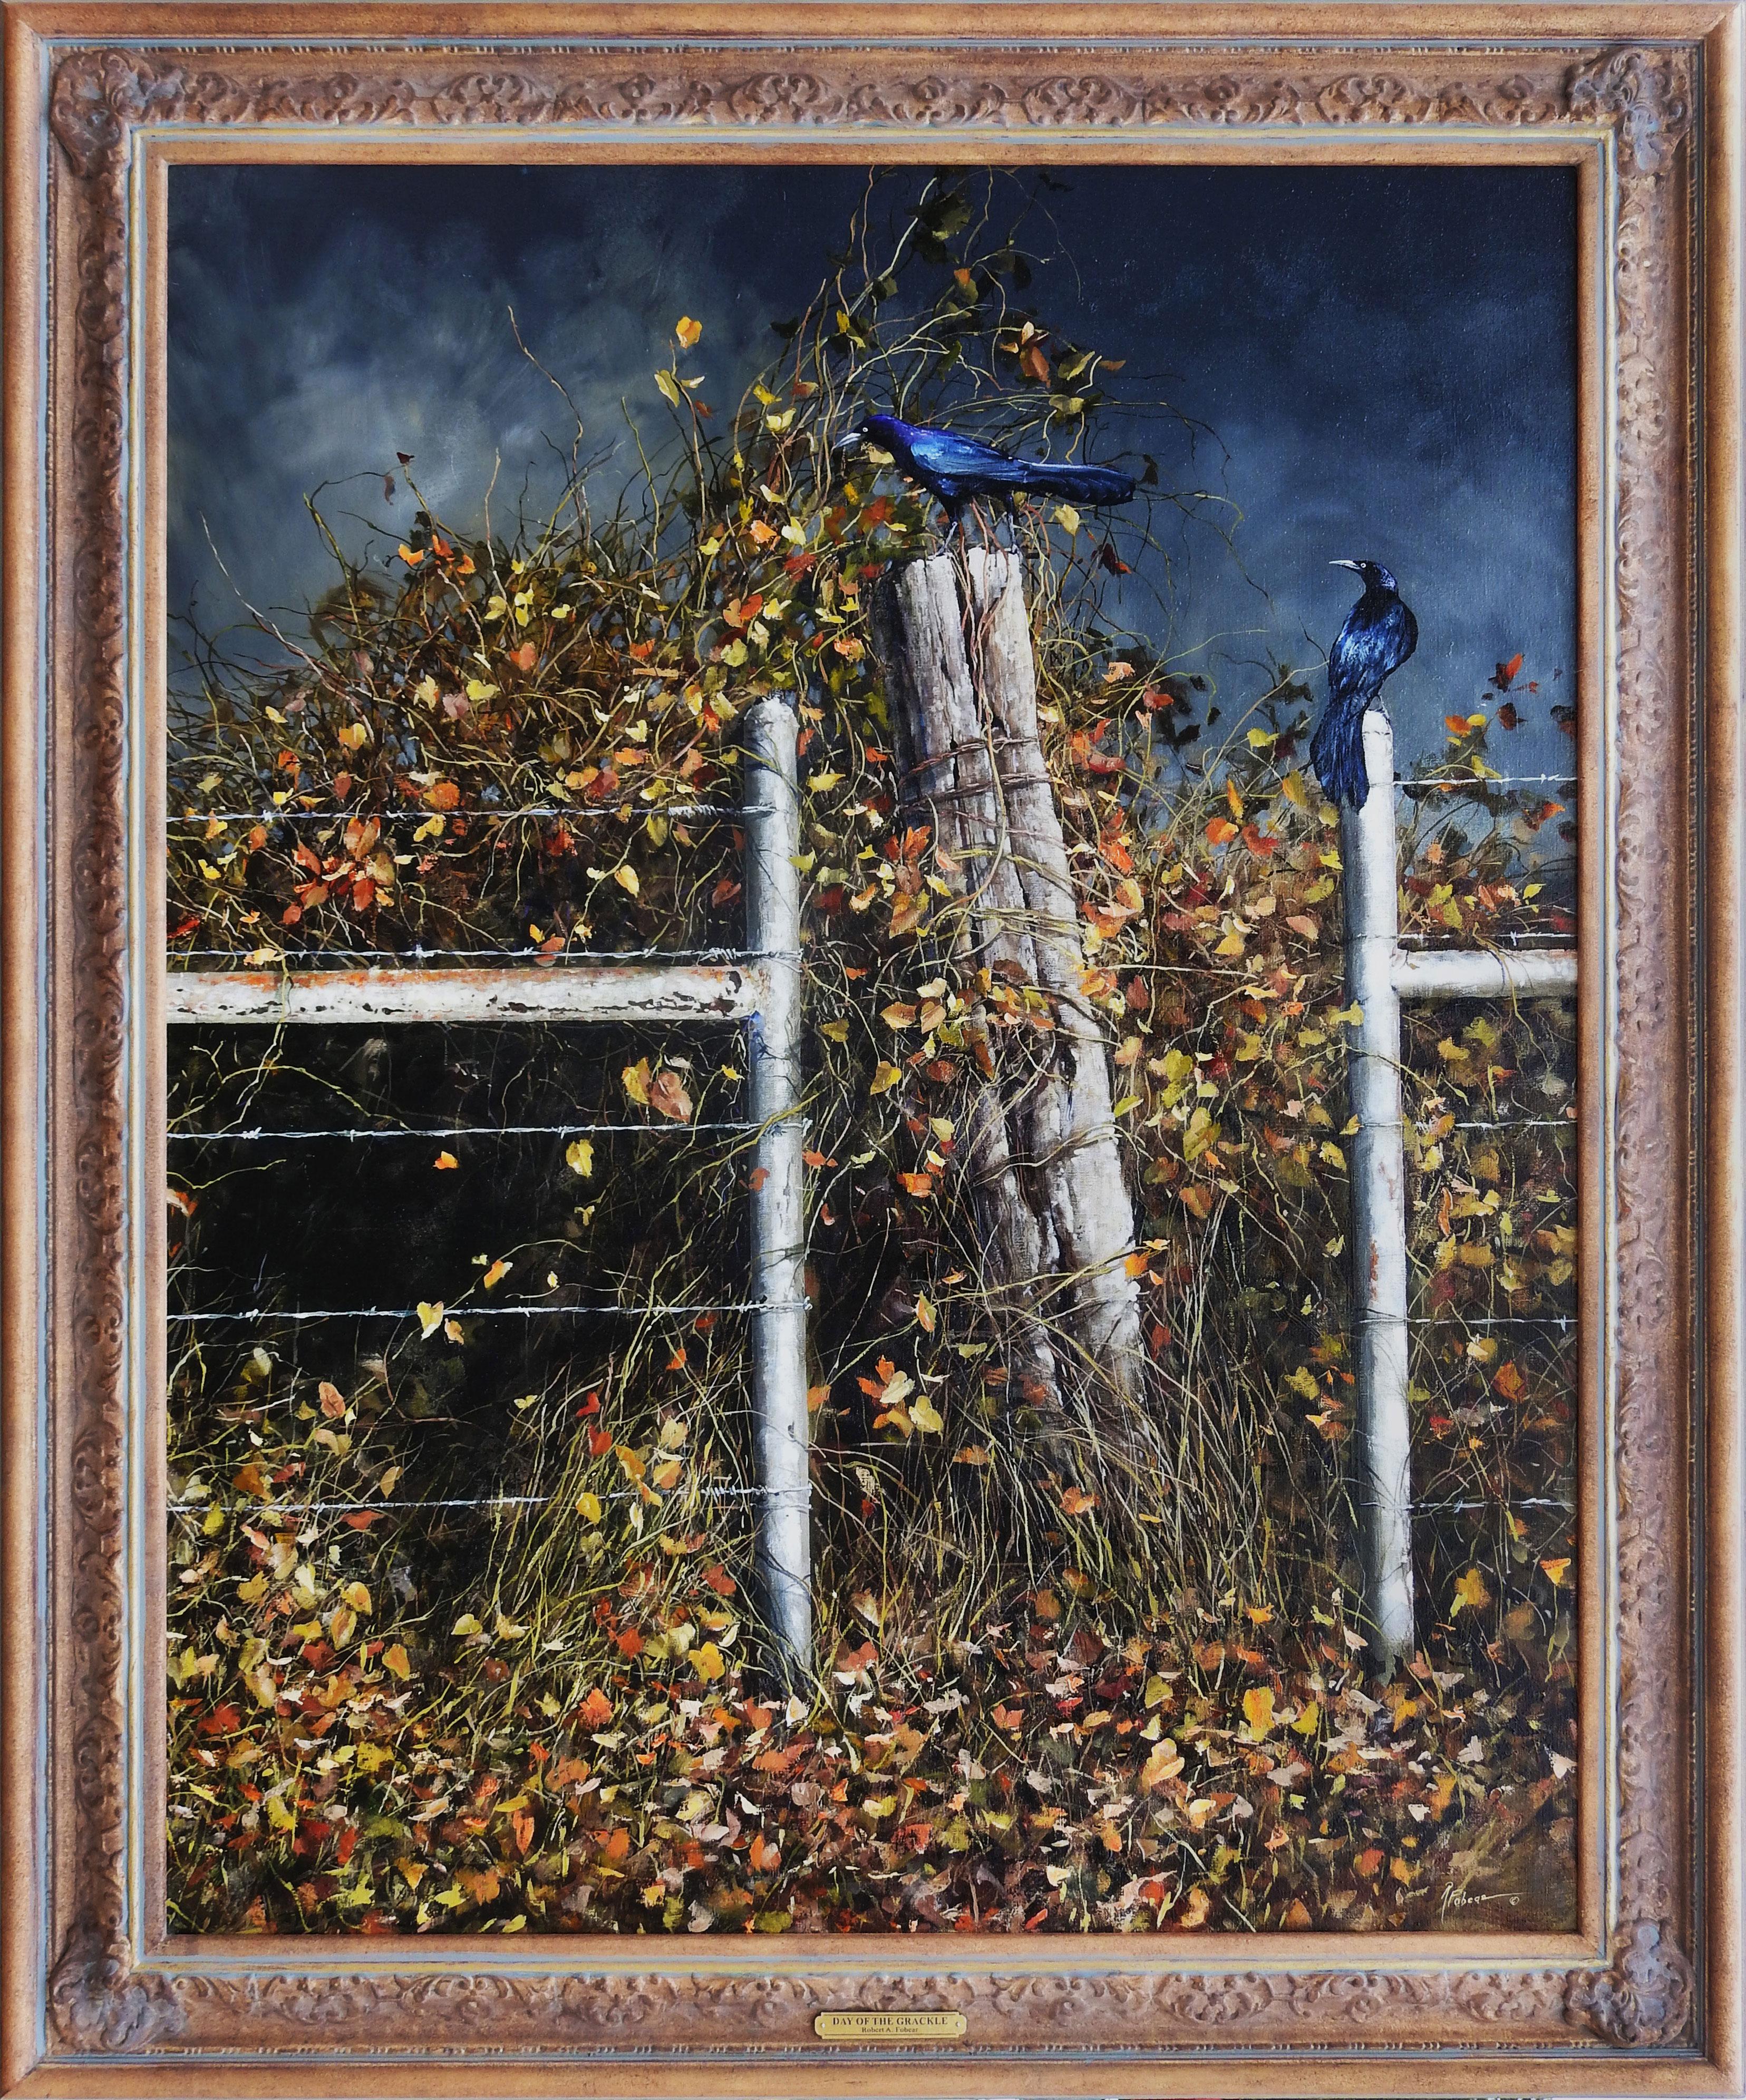 "Calling for Rain" ist ein Original-Öl auf Leinen Gemälde von Texas Künstler Robert Fobear und misst 60x48 Zoll. Dieses atemberaubende Stück fängt die Essenz des Herbstes mit seinen leuchtenden goldenen und grünen Blättern vor einem dunklen und